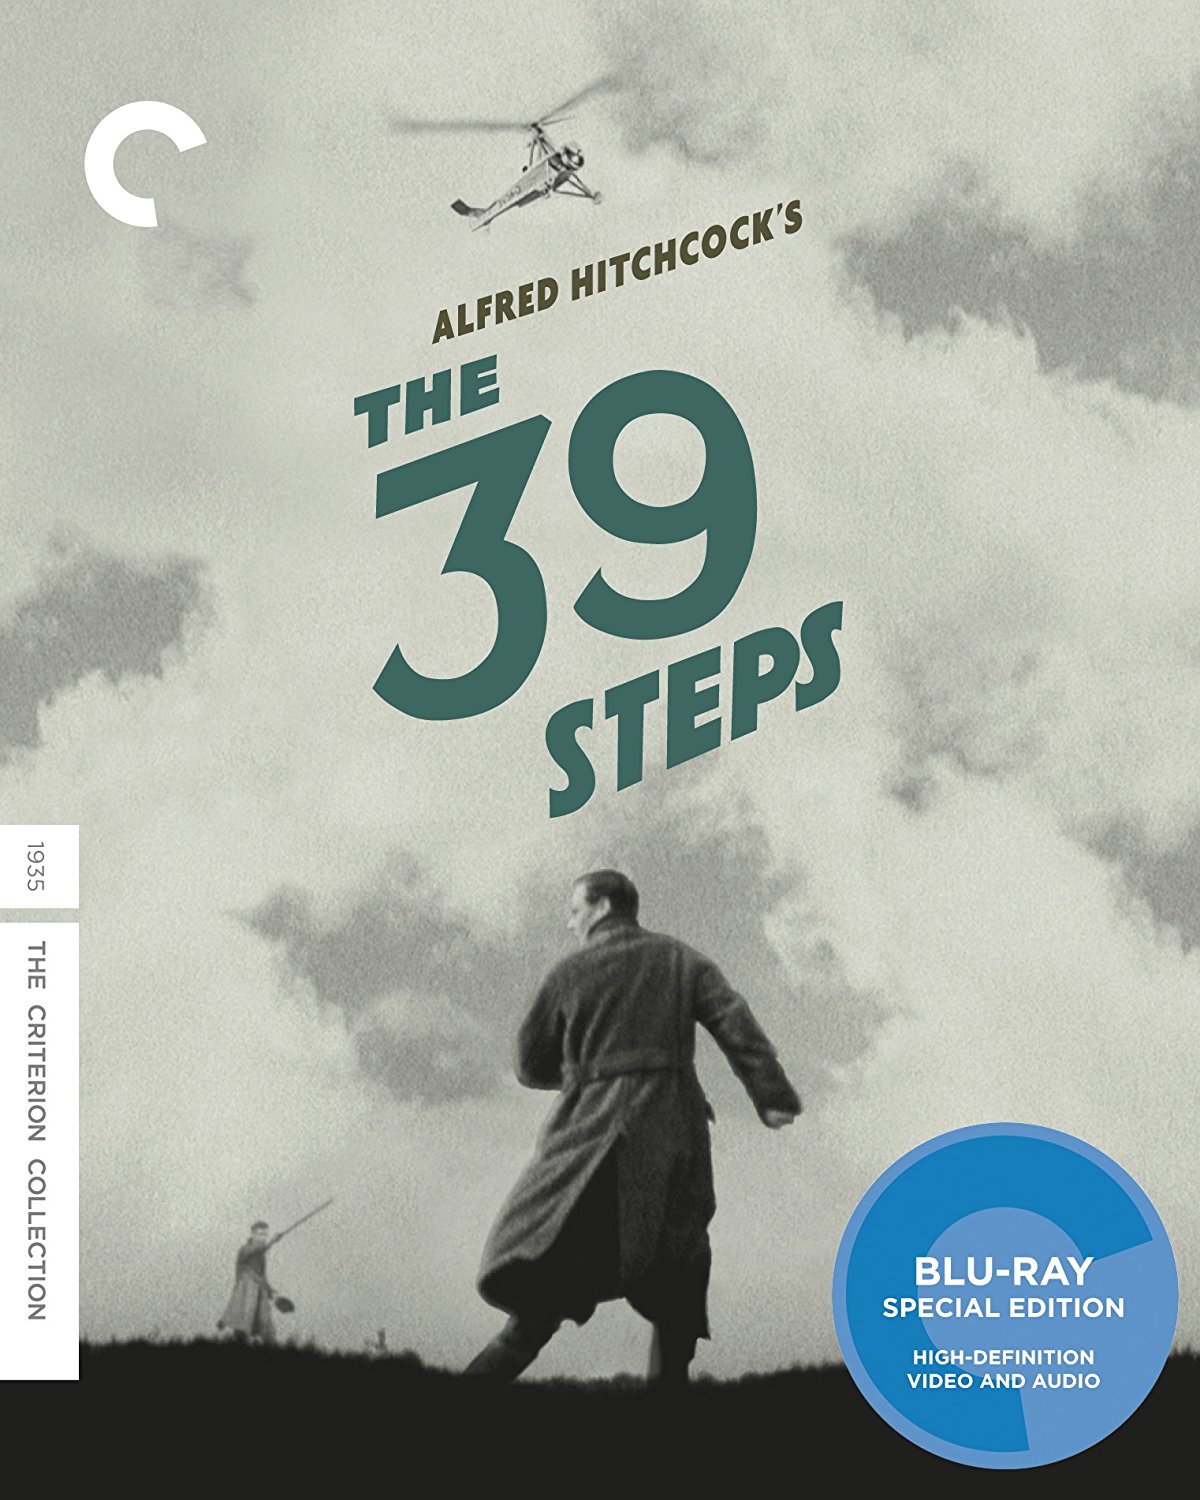 [三十九级台阶].The.39.Steps.1935.CC.BluRay.1080p.AVC.LPCM.1.0-DiY@HDHome    43.26G-1.jpg